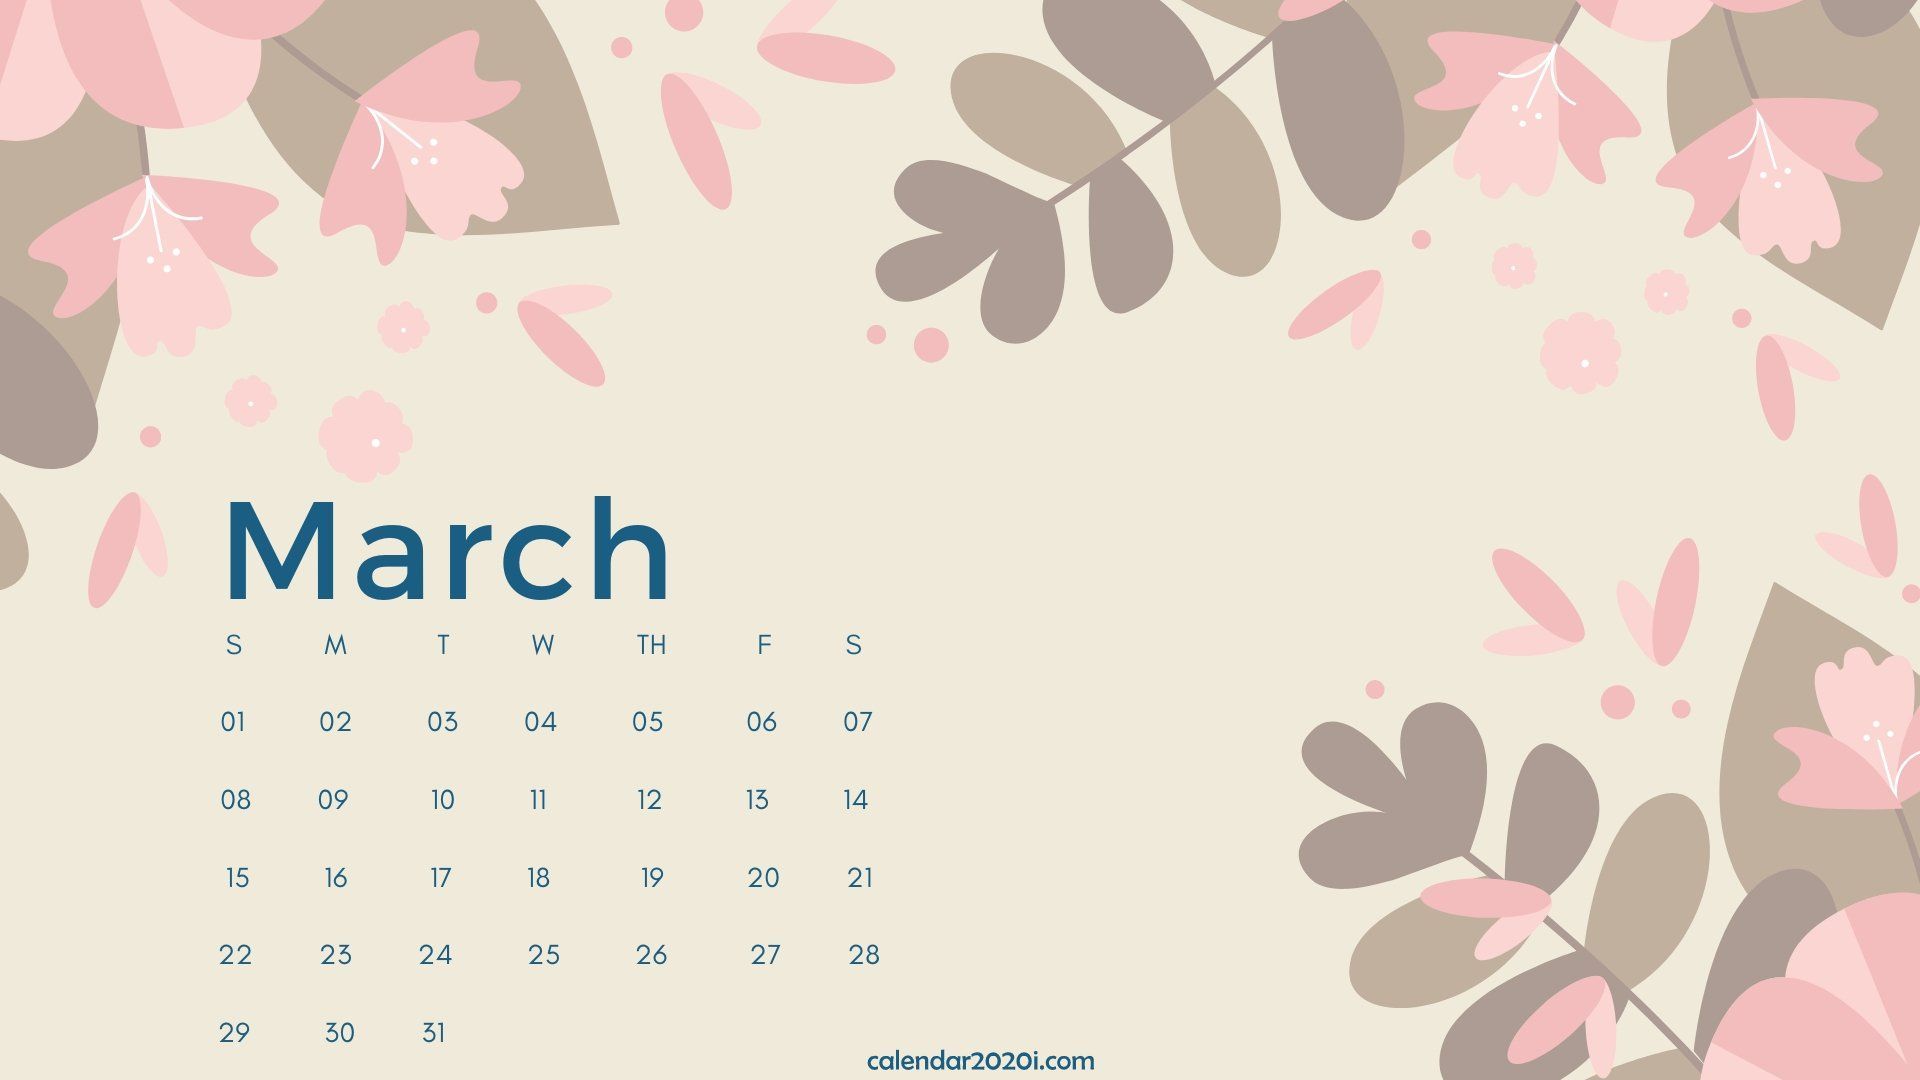 94 March 2018 Calendar Wallpapers  WallpaperSafari